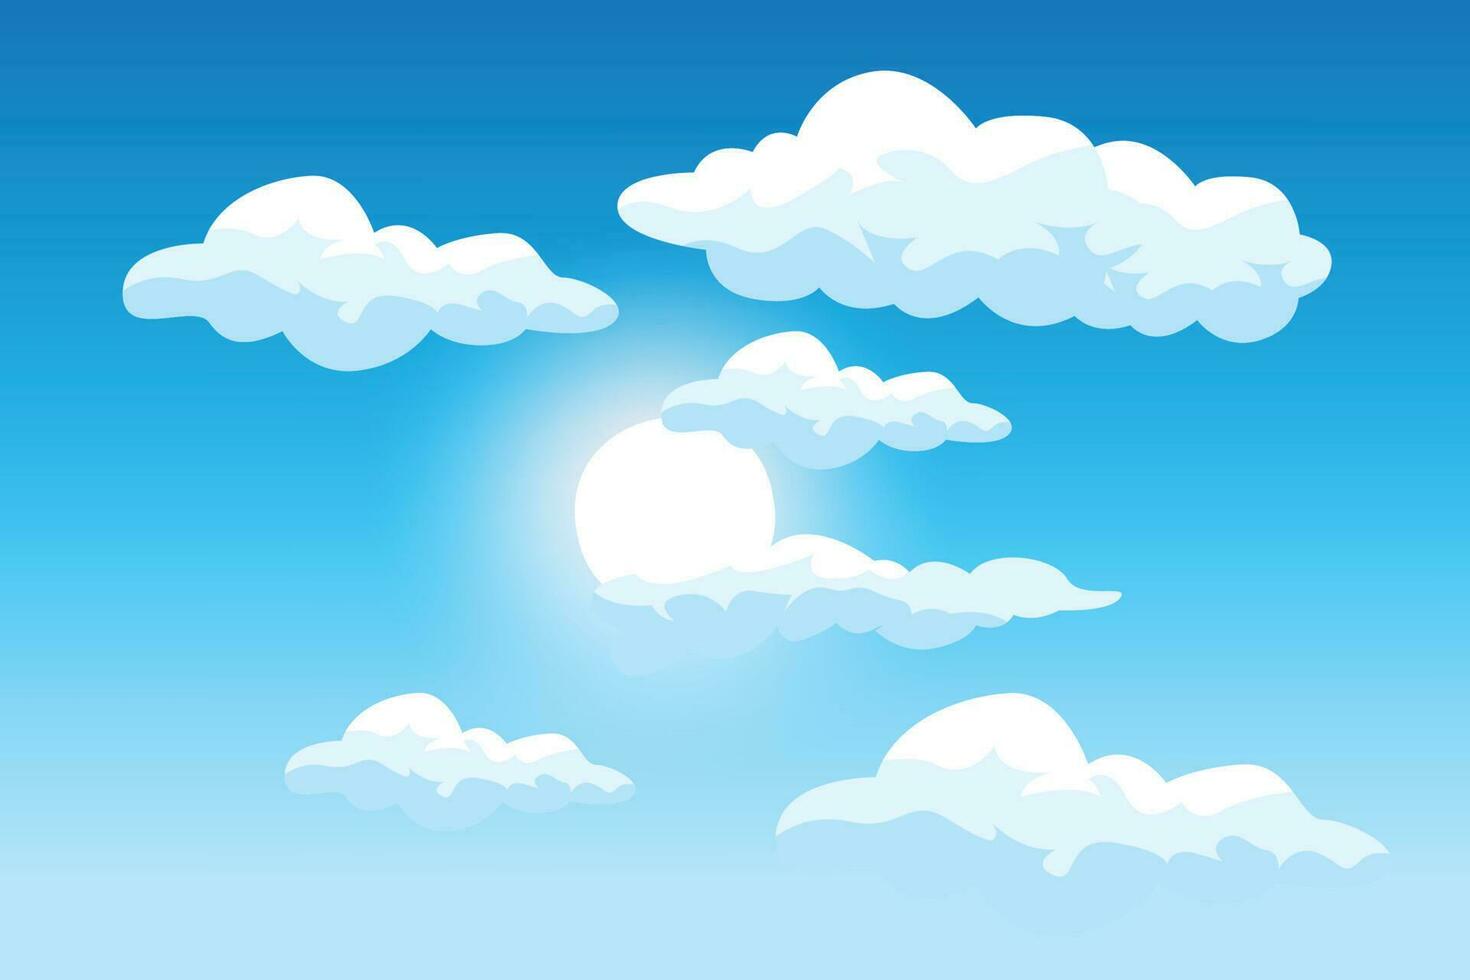 design de fundo de nuvem, ilustração de paisagem do céu, vetor de decoração, banners e cartazes